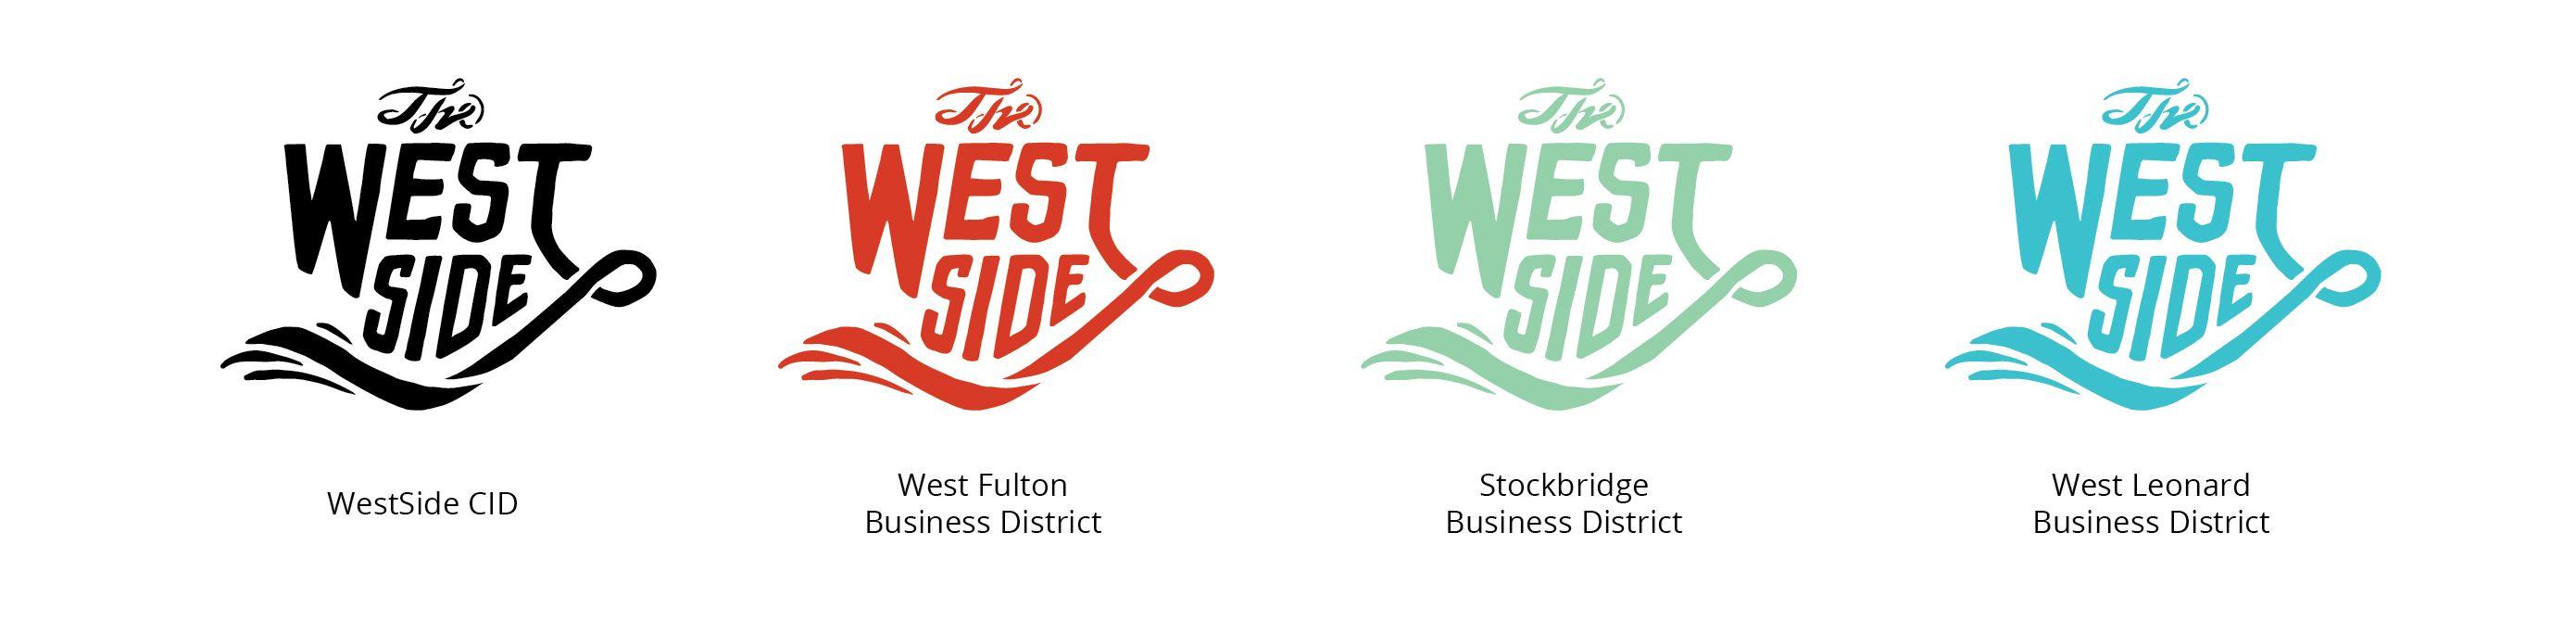 Westside Logo - WestSide Logos | West Side CID